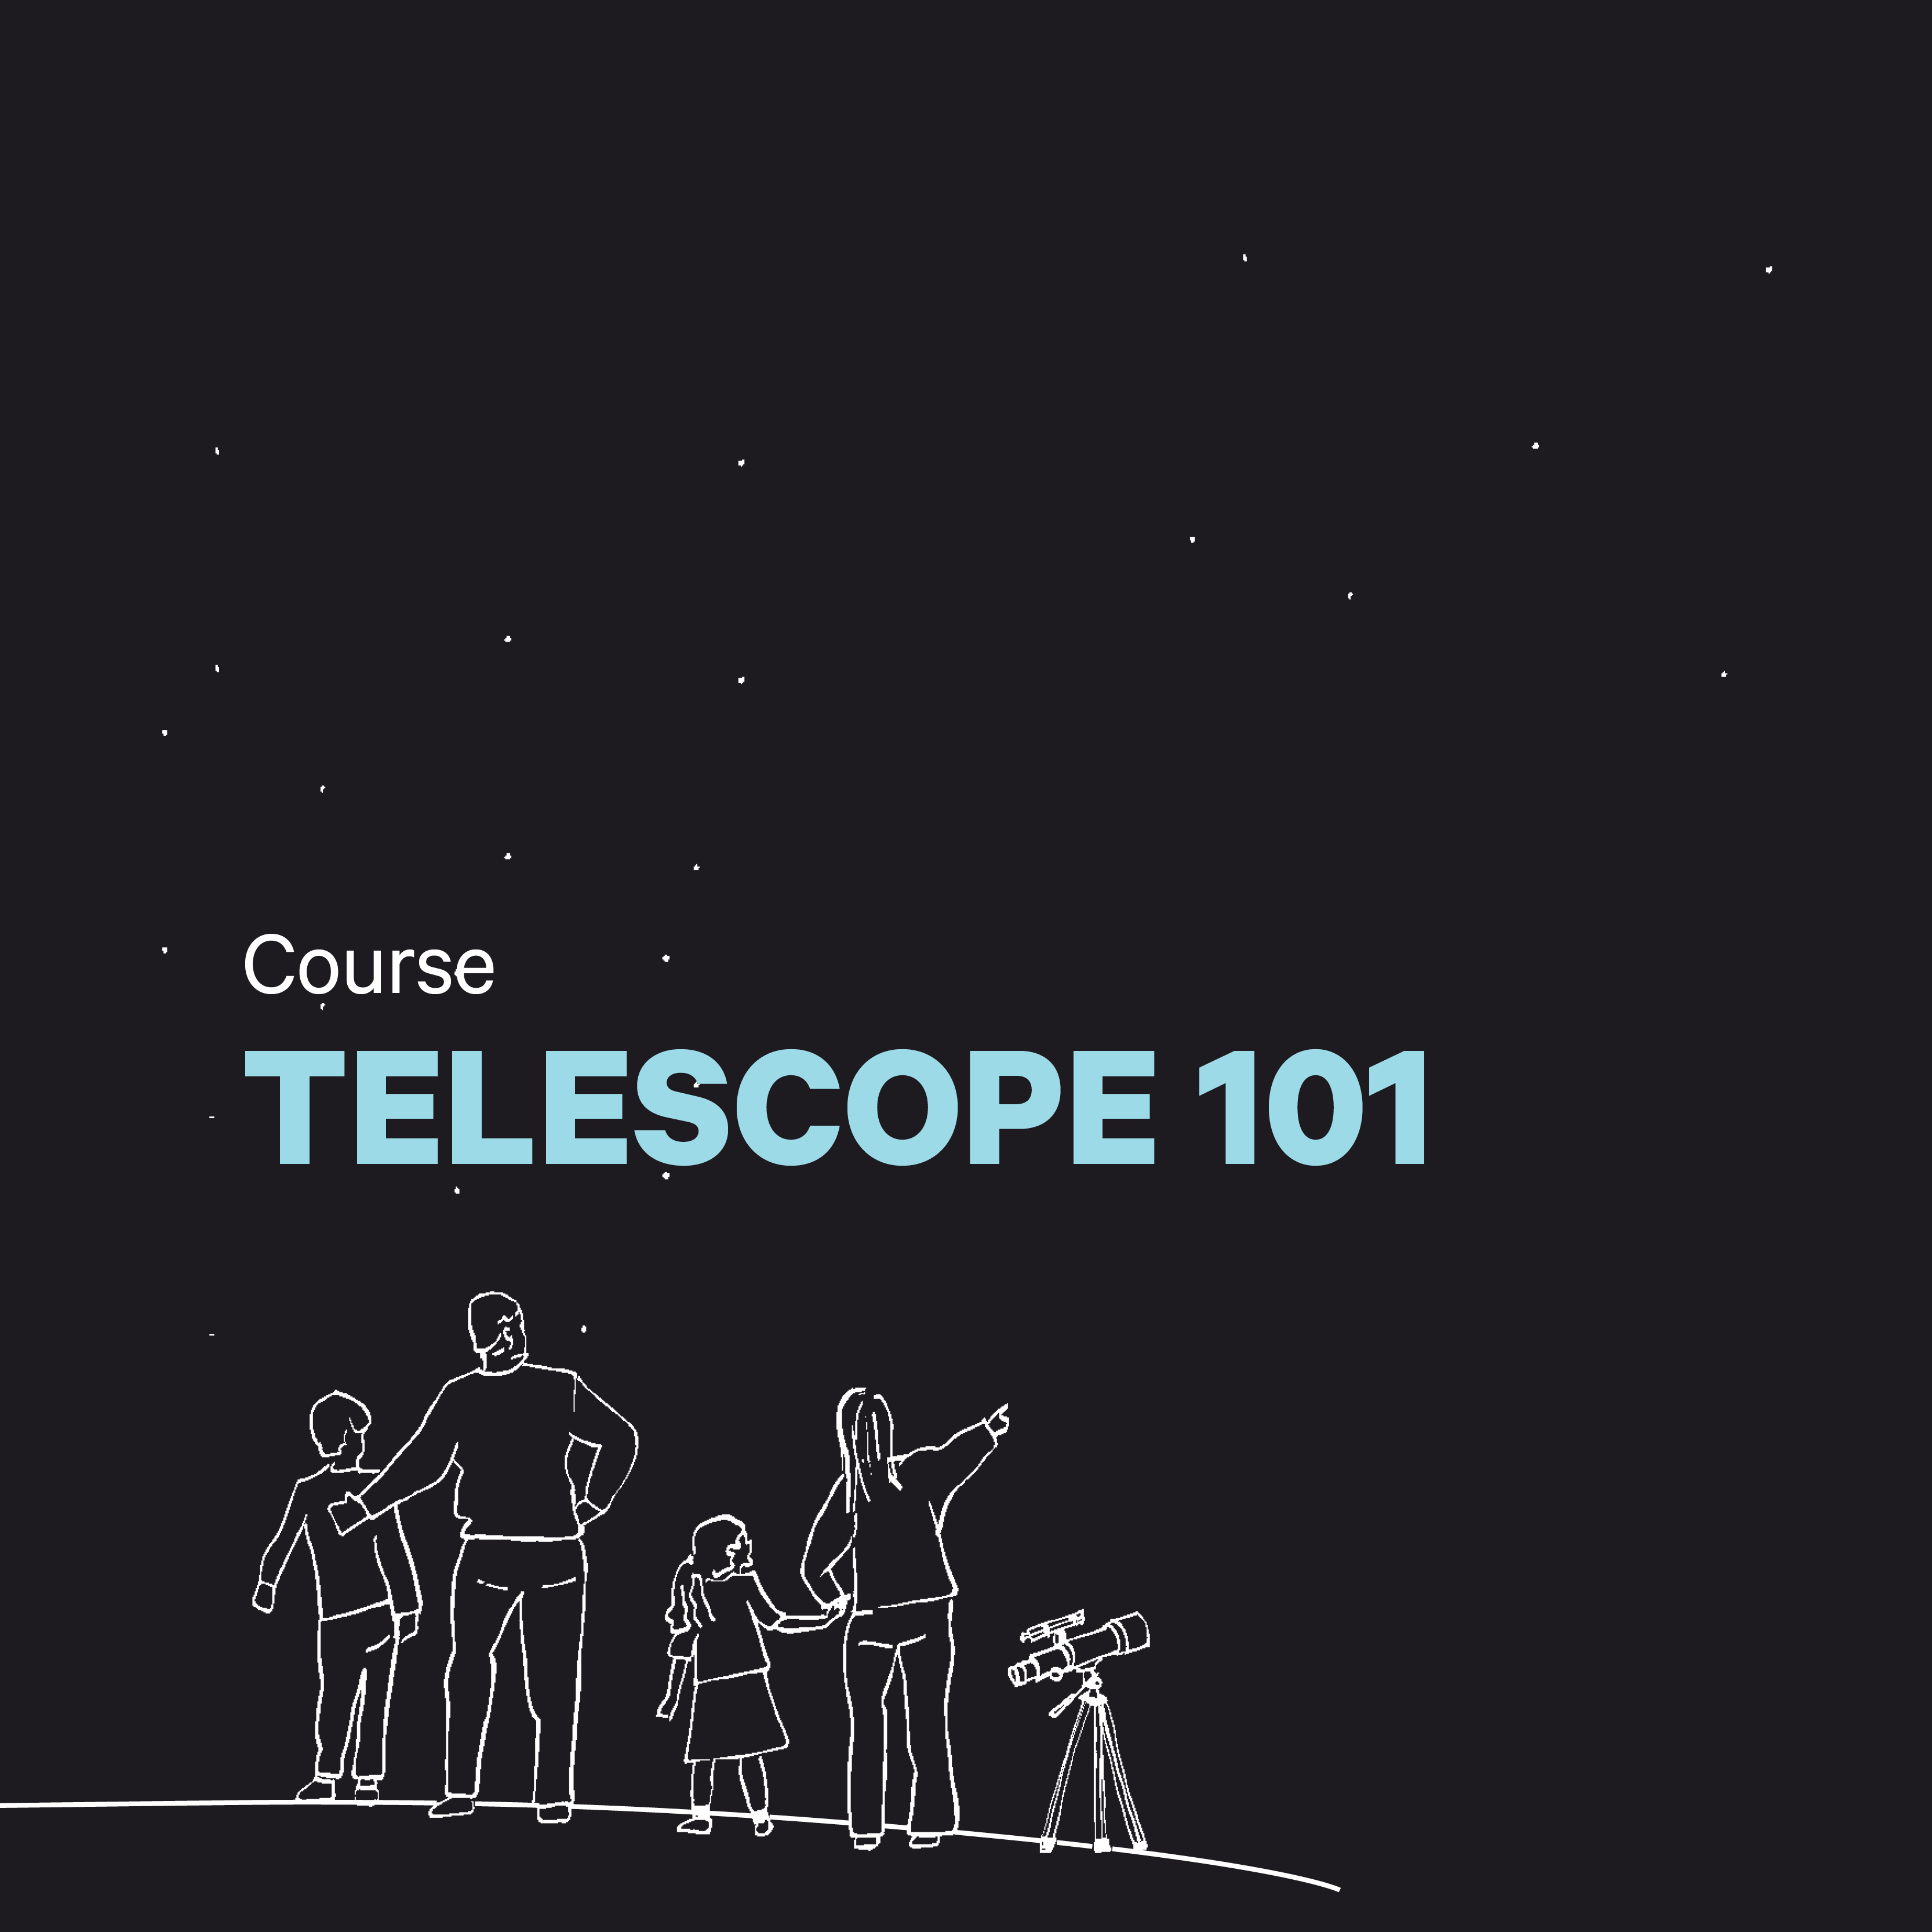 Telescope 101 course